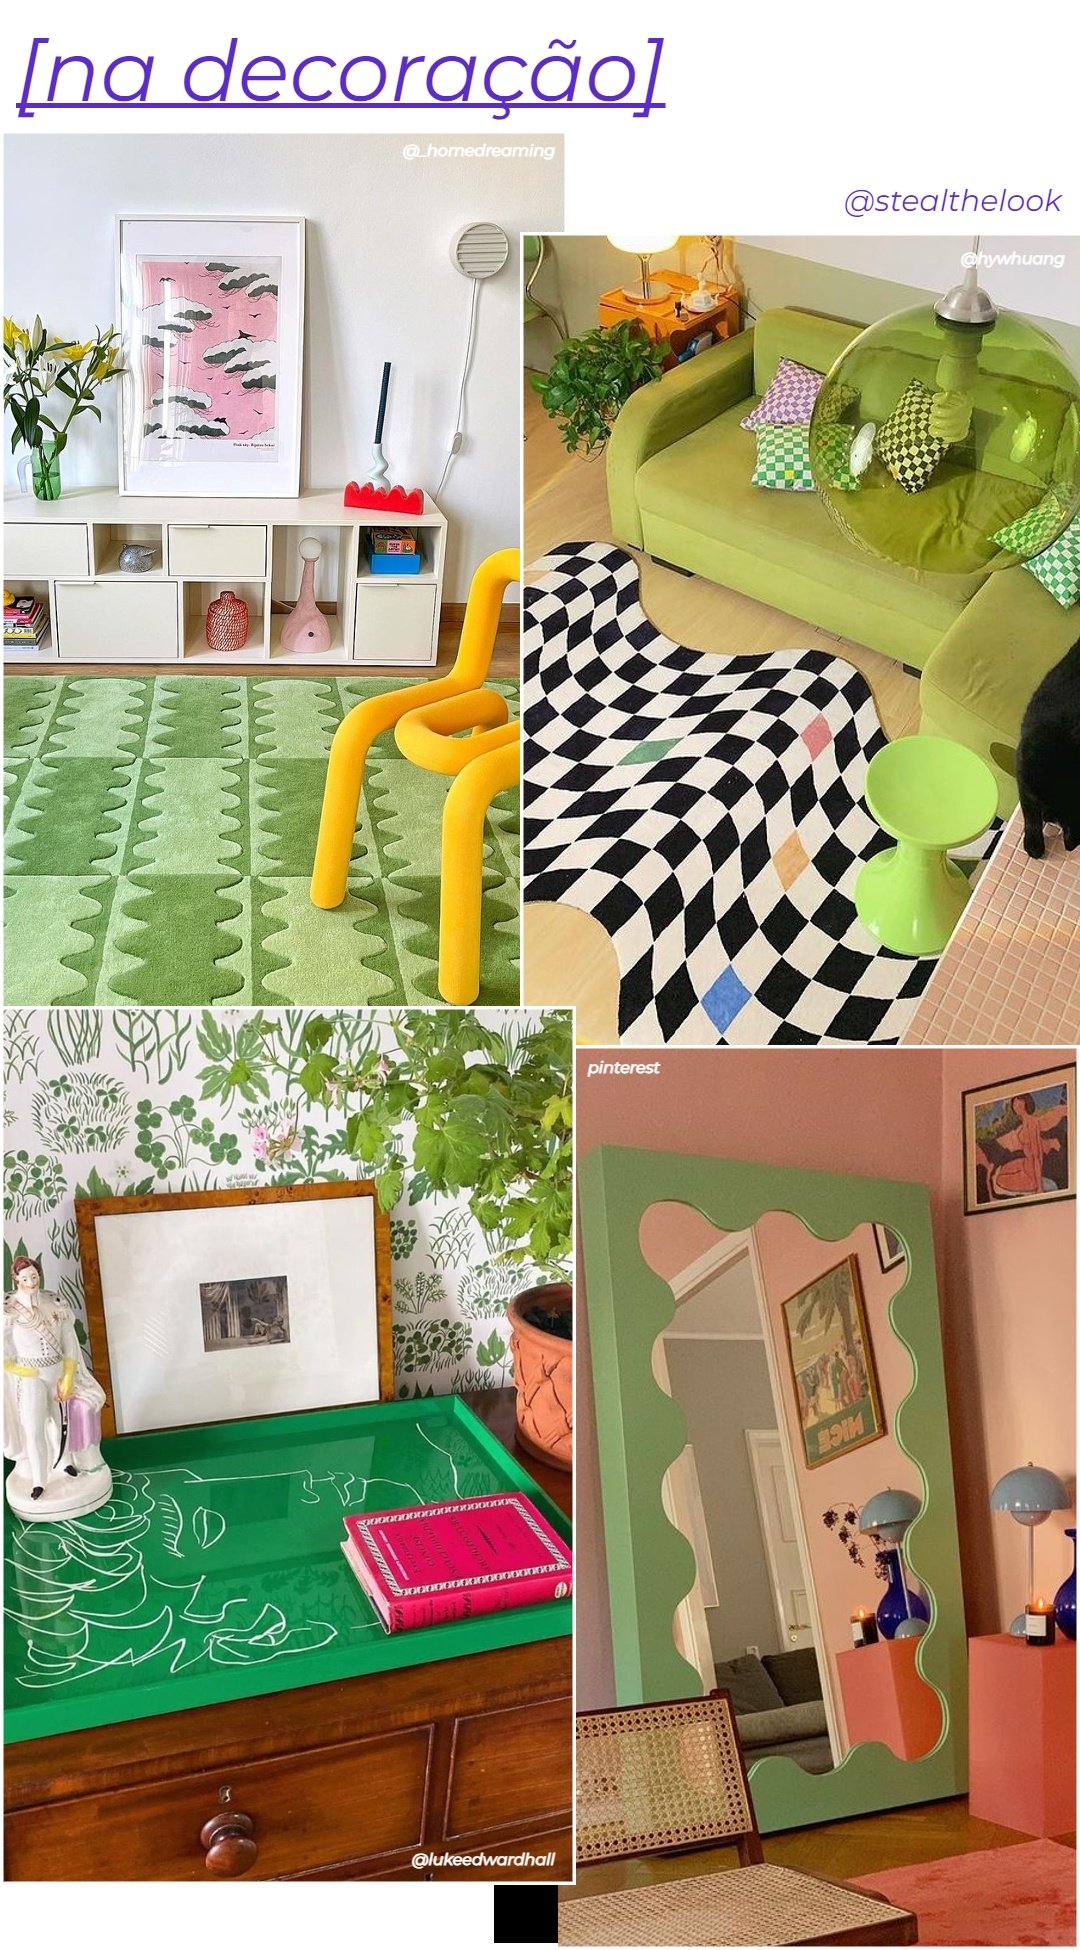 @_homedreaming e Pinterest - N/A - cor tendência - inverno - colagem com 4 fotos diferentes mostrando como usar verde na decoração da casa - https://stealthelook.com.br